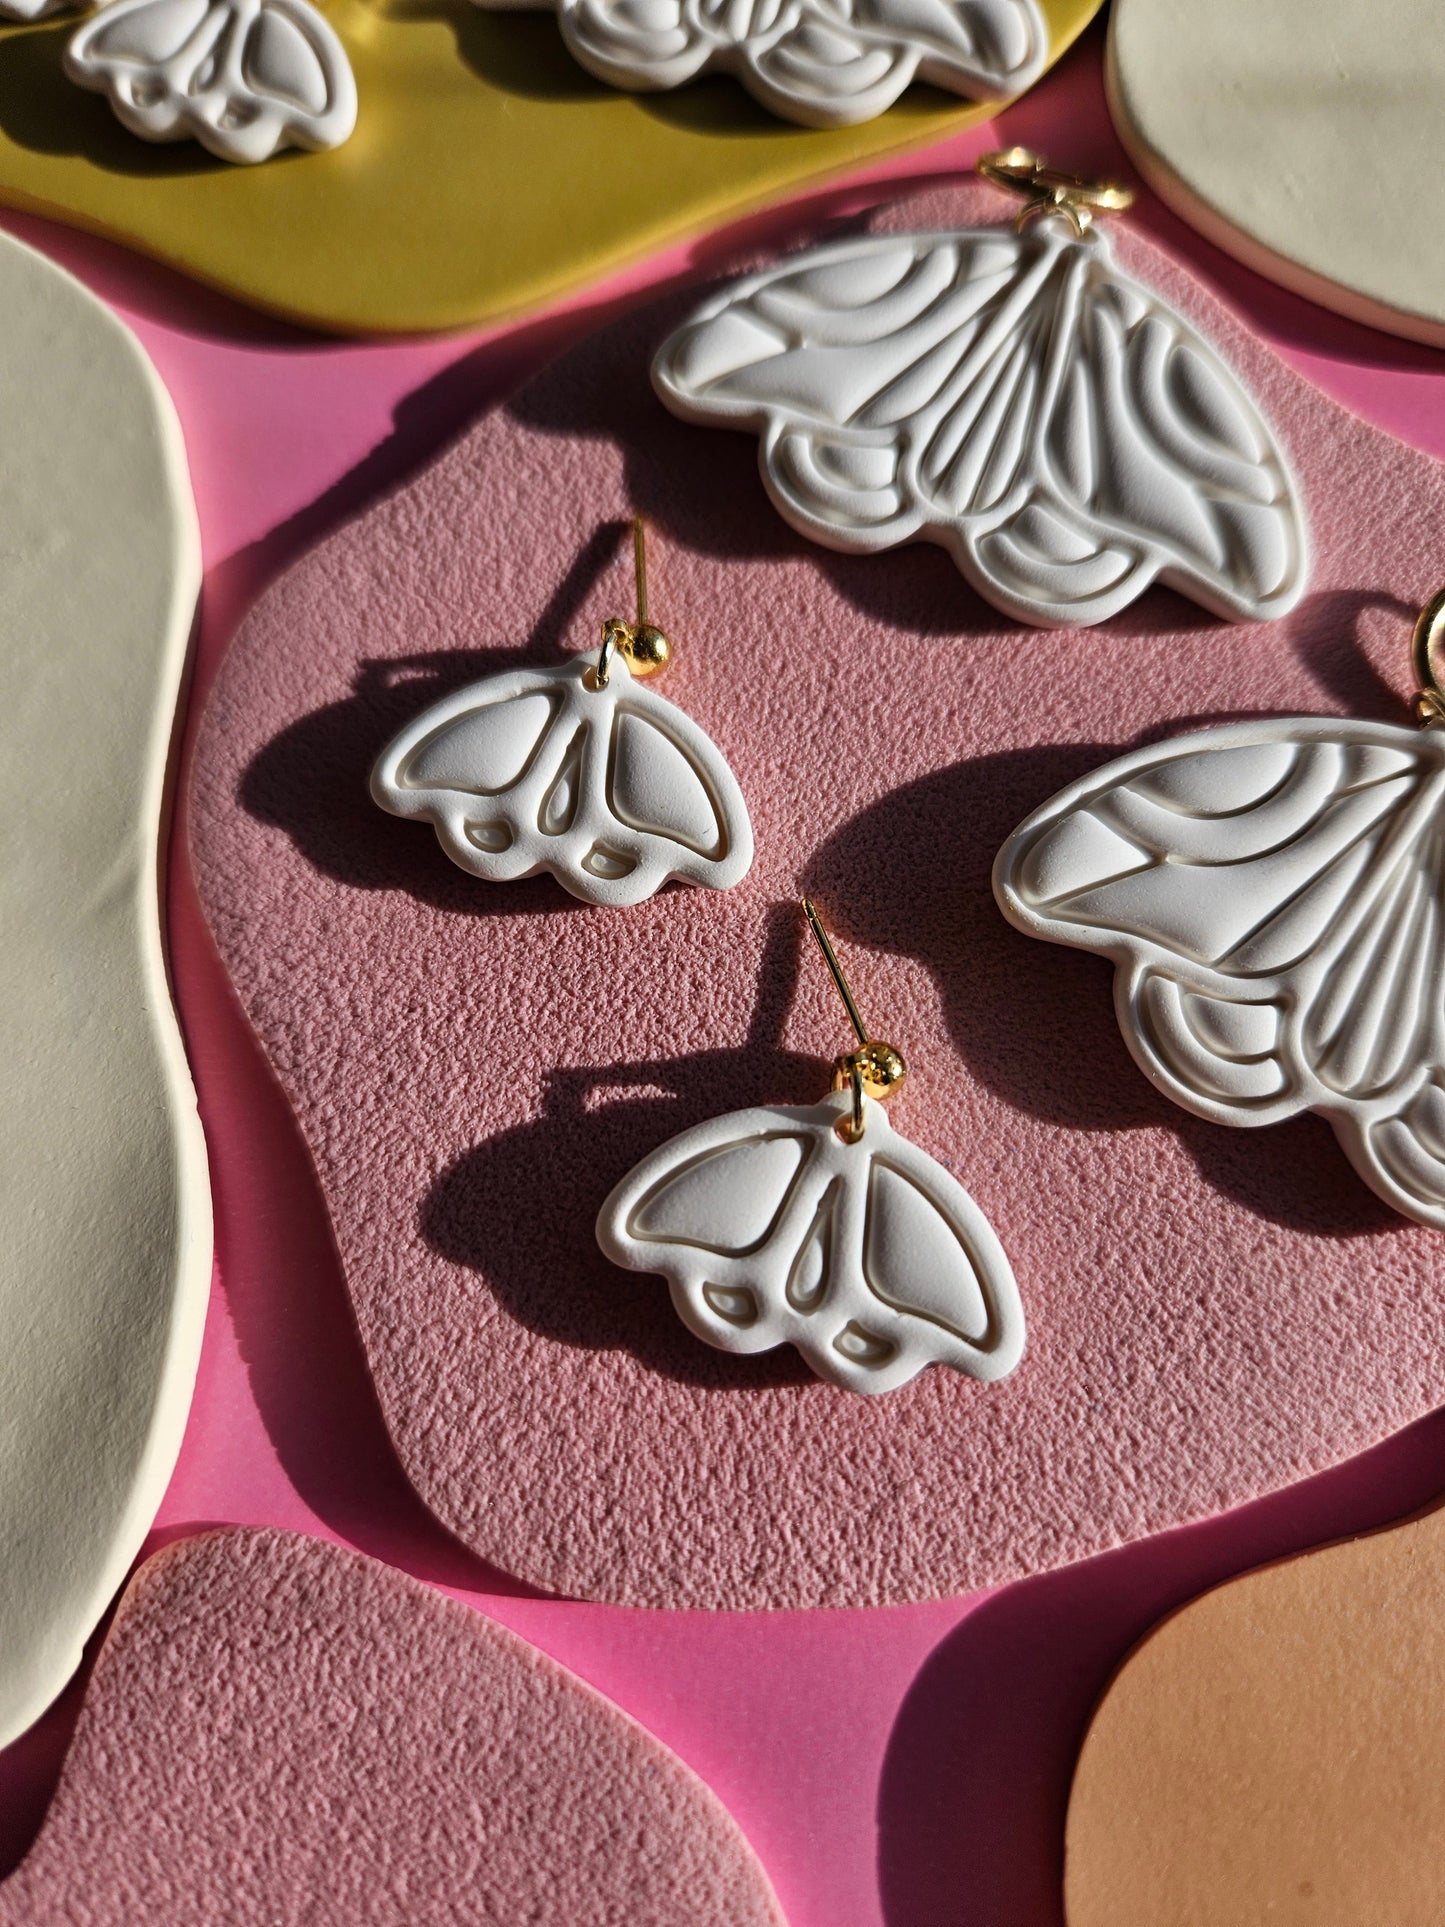 "The Joyce" Emily Van Hoff Moth Inspired Polymer Clay Earrings in Moonlight White